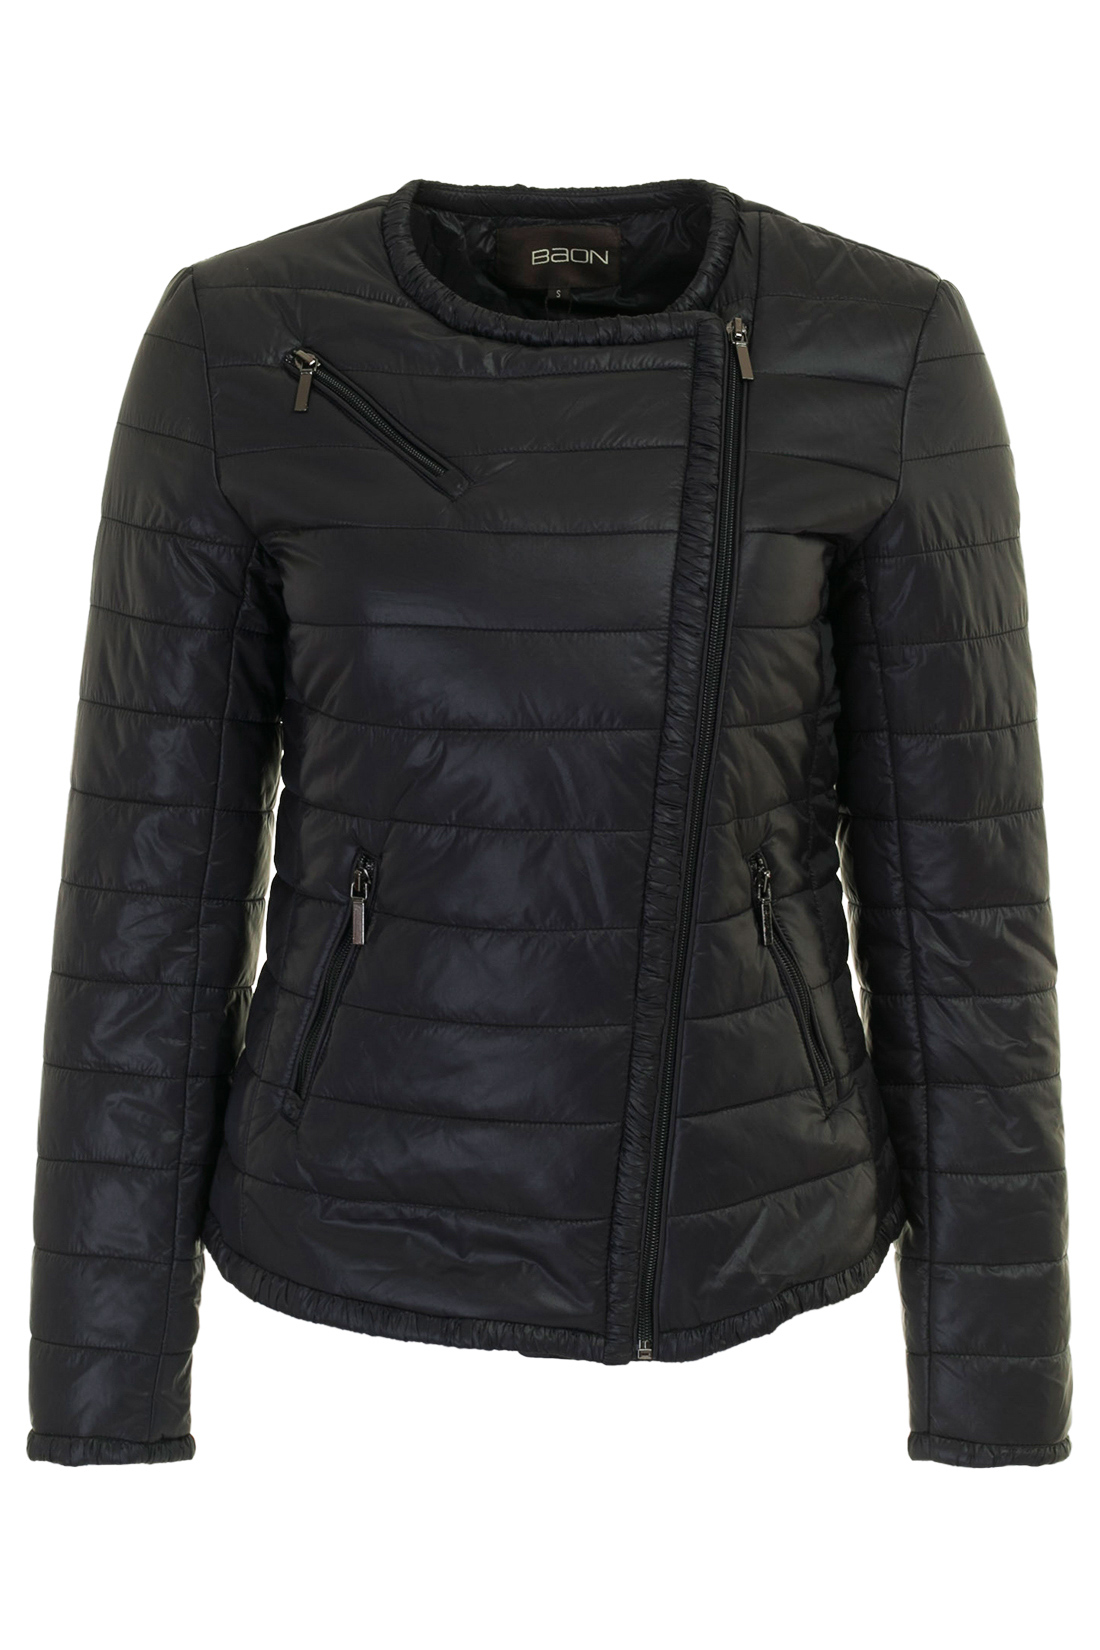 Утеплённая куртка-косуха (арт. baon B037038), размер XXL, цвет черный Утеплённая куртка-косуха (арт. baon B037038) - фото 5